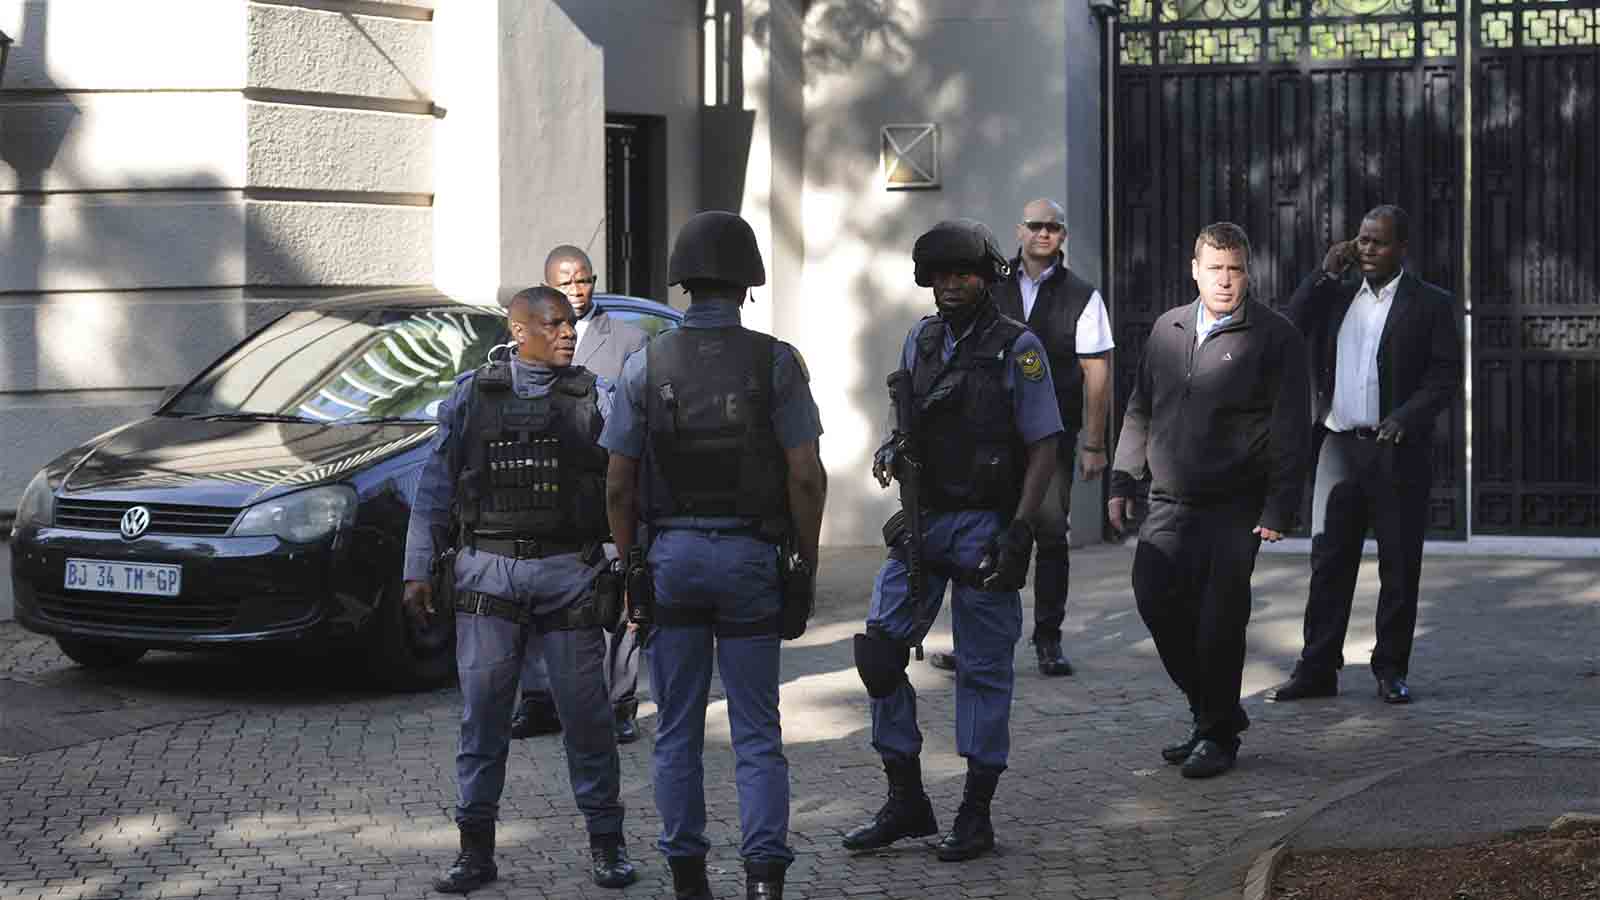 פשיטת יחידת עילית של משטרת דרום אפריקה על מתחם המגורים של משפחת גופטה המקושרת לנשיא זומה, בבוקר ההודעה על התפטרותו (AP Photo)